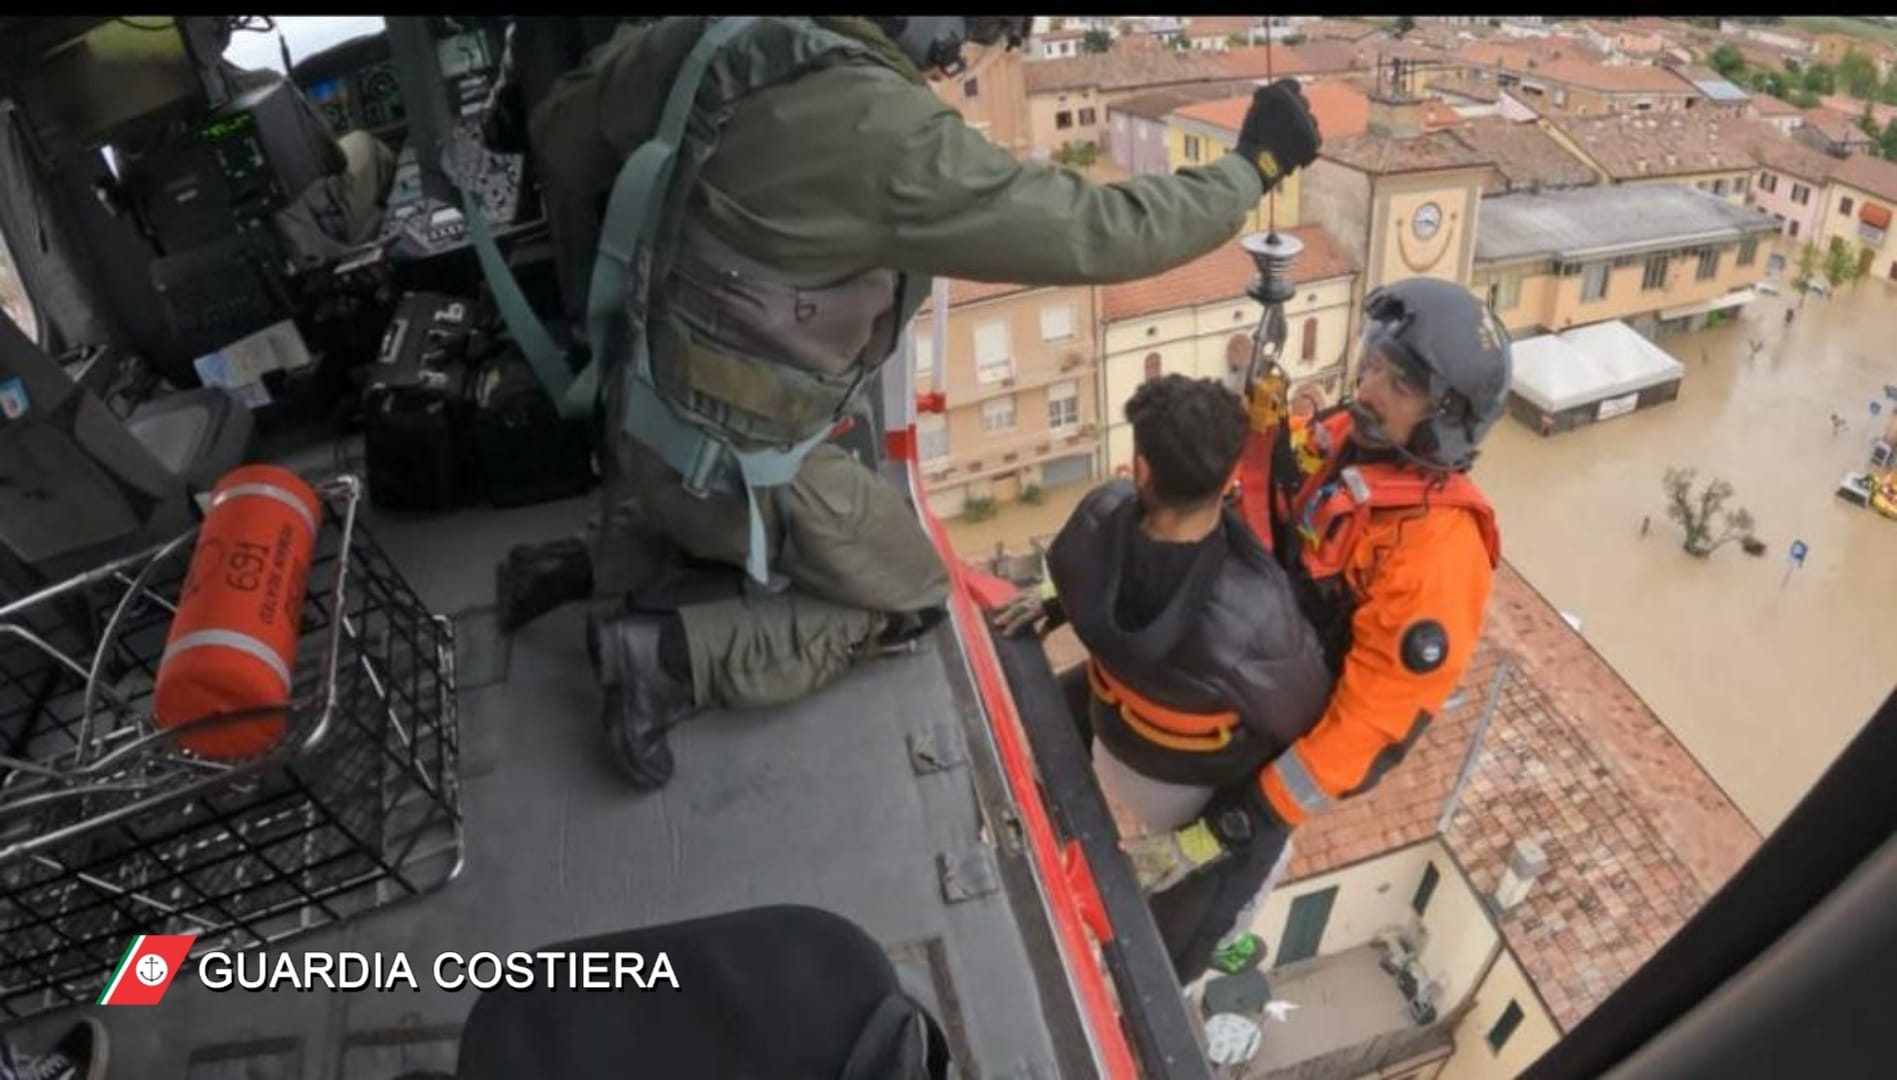 La Guardia costiera di Catania mette in salvo 9 persone nel Ravennate